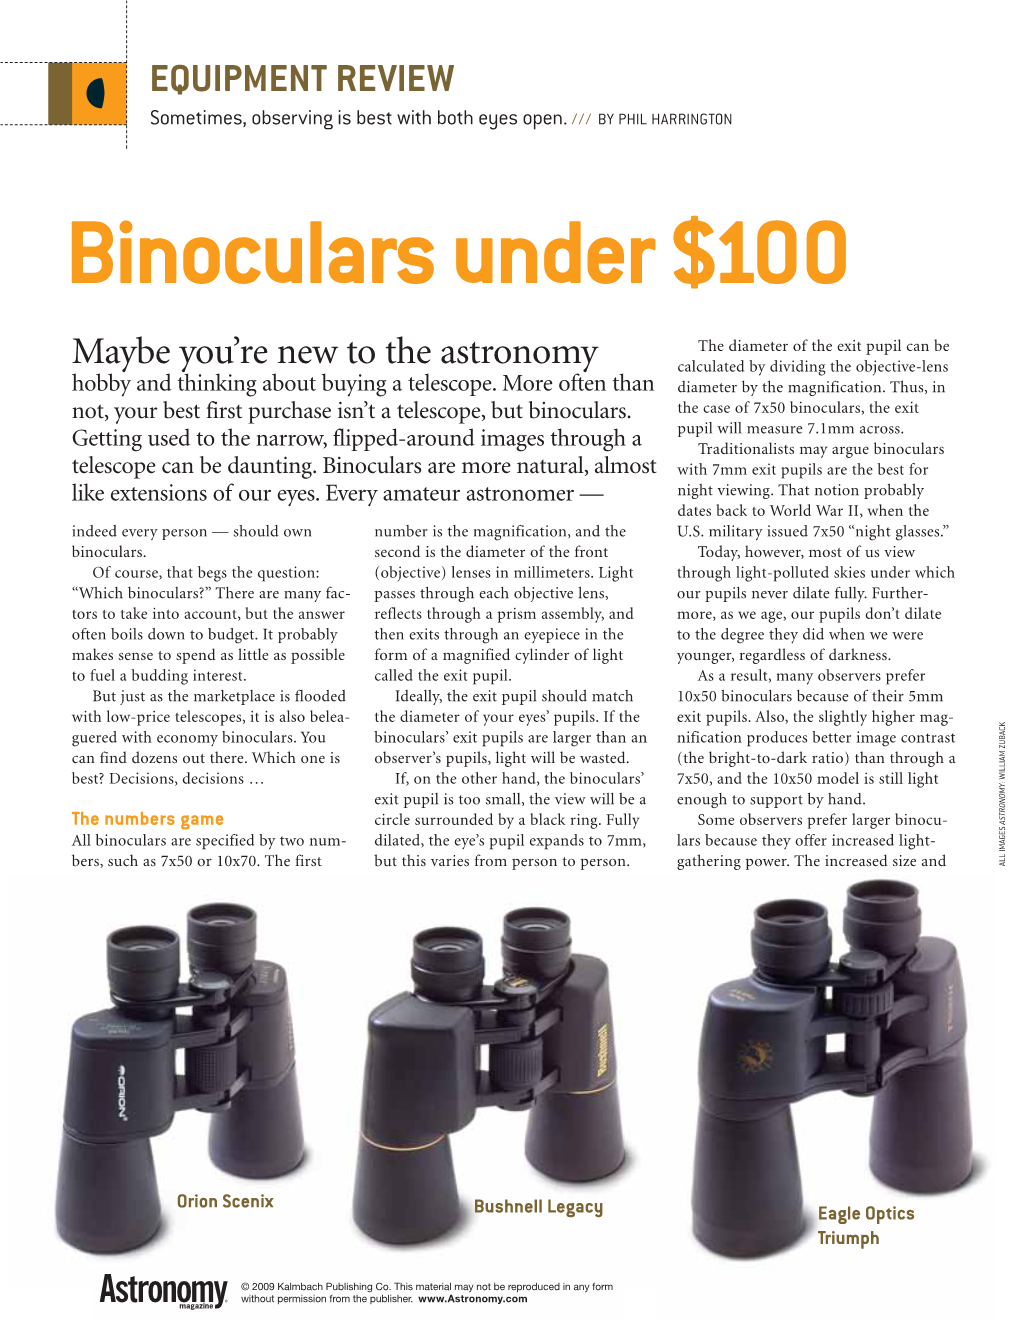 Binoculars Under $100